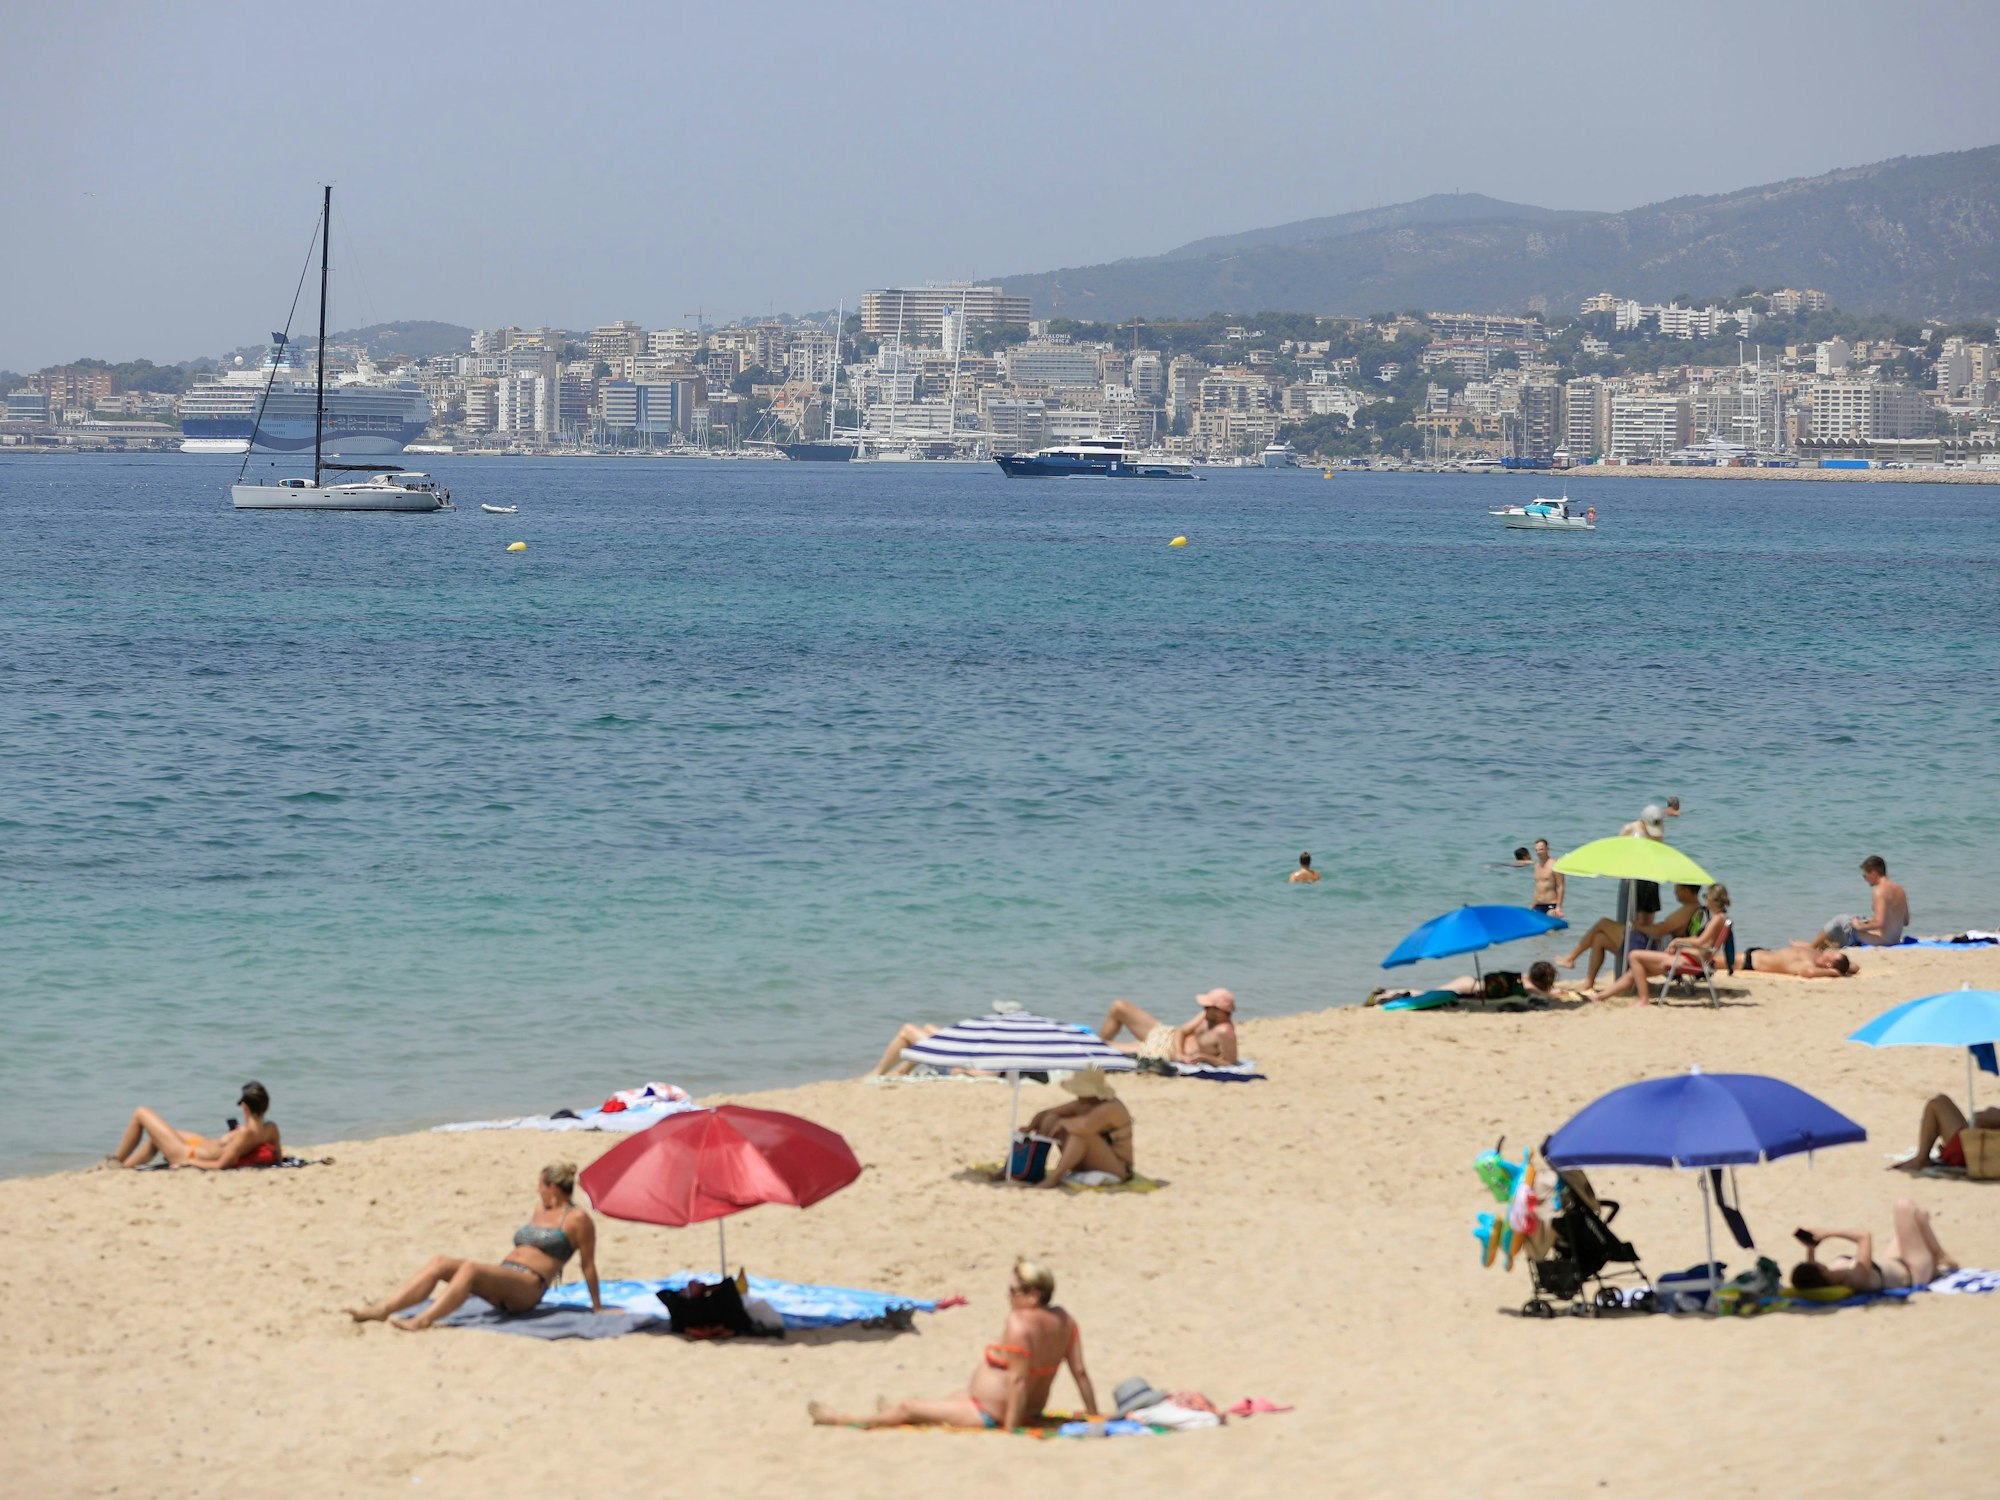 Menschen sonnen sich und benutzen Sonnenschirme am Strand.